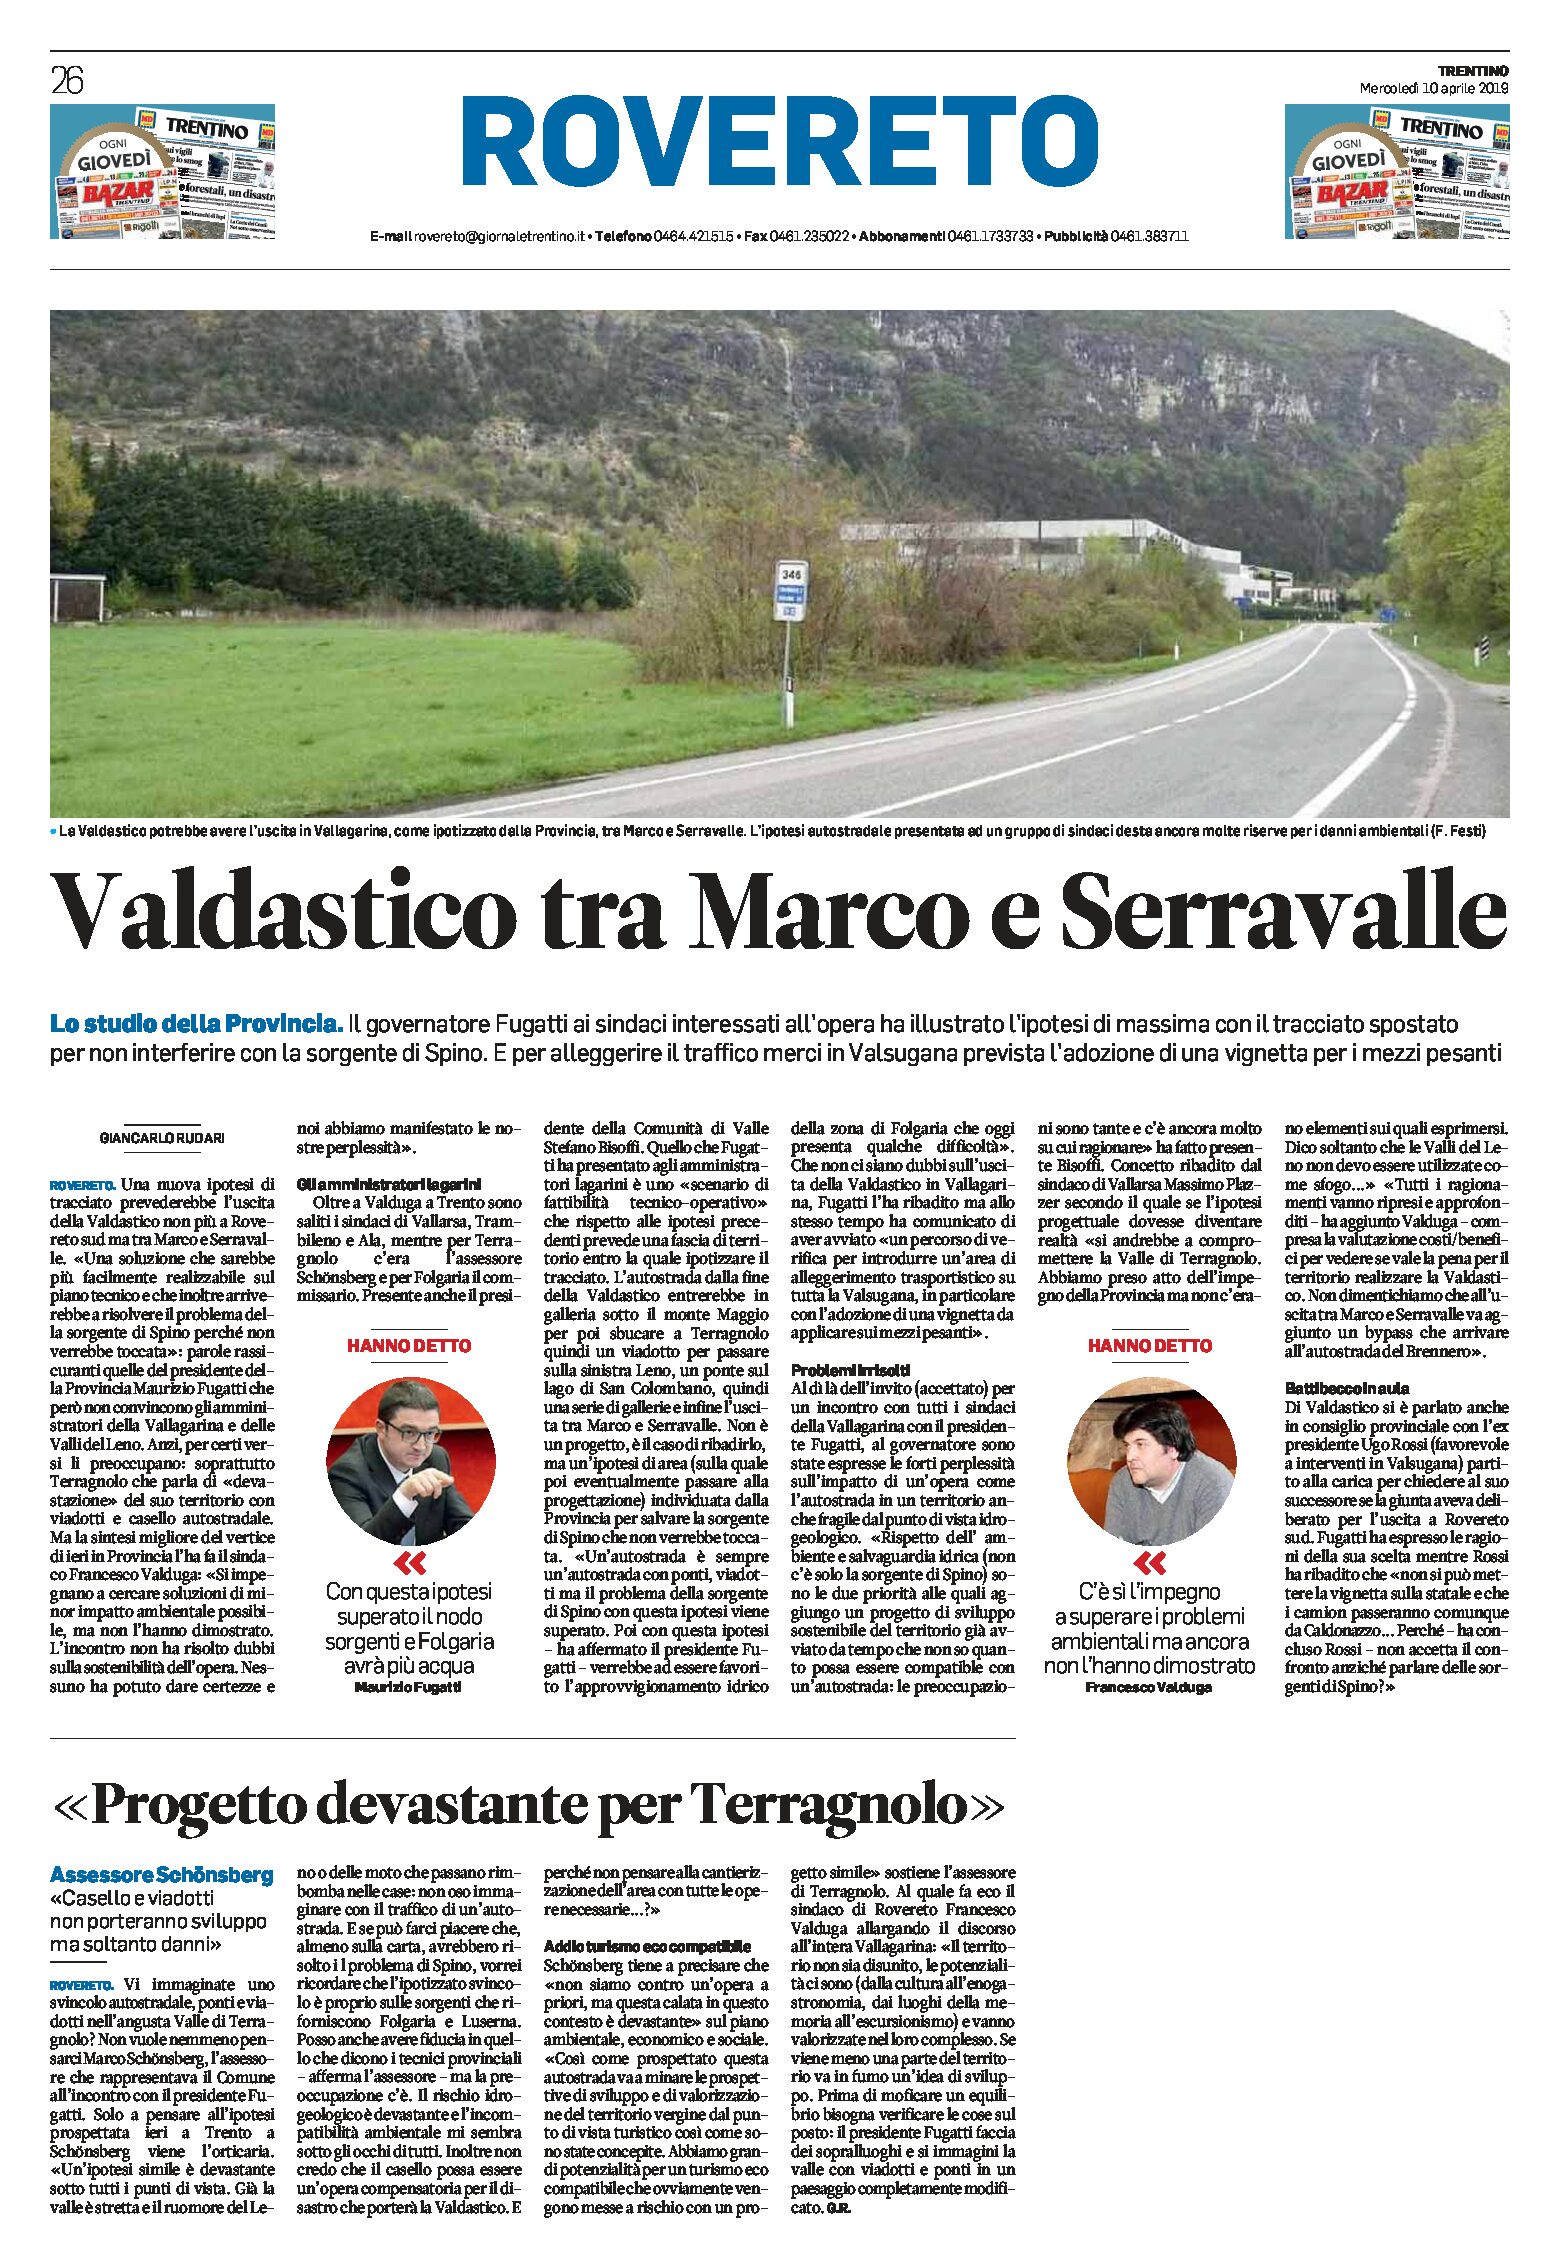 Valdastico: uscita tra Marco e Serravalle. Studio della Provincia